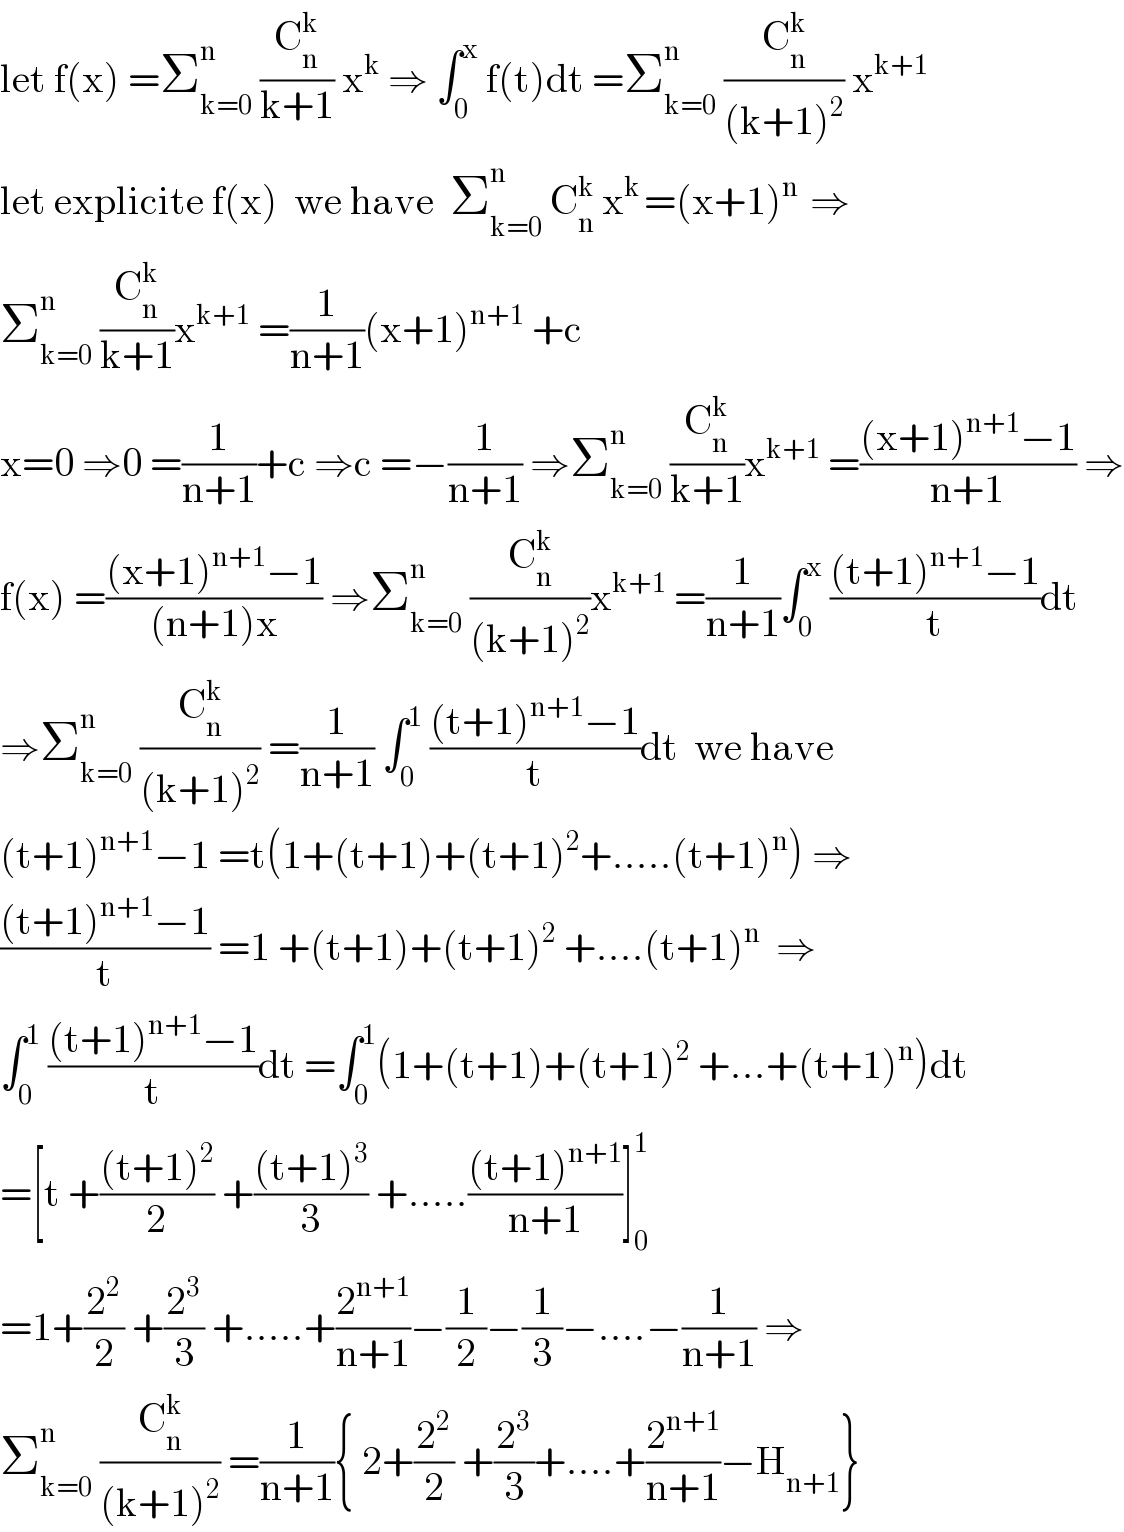 let f(x) =Σ_(k=0) ^n  (C_n ^k /(k+1)) x^k  ⇒ ∫_0 ^x  f(t)dt =Σ_(k=0) ^n  (C_n ^k /((k+1)^2 )) x^(k+1)   let explicite f(x)  we have  Σ_(k=0) ^n  C_n ^k  x^(k ) =(x+1)^(n )  ⇒  Σ_(k=0) ^n  (C_n ^k /(k+1))x^(k+1)  =(1/(n+1))(x+1)^(n+1)  +c  x=0 ⇒0 =(1/(n+1))+c ⇒c =−(1/(n+1)) ⇒Σ_(k=0) ^n  (C_n ^k /(k+1))x^(k+1)  =(((x+1)^(n+1) −1)/(n+1)) ⇒  f(x) =(((x+1)^(n+1) −1)/((n+1)x)) ⇒Σ_(k=0) ^n  (C_n ^k /((k+1)^2 ))x^(k+1)  =(1/(n+1))∫_0 ^x  (((t+1)^(n+1) −1)/t)dt  ⇒Σ_(k=0) ^n  (C_n ^k /((k+1)^2 )) =(1/(n+1)) ∫_0 ^1  (((t+1)^(n+1) −1)/t)dt  we have  (t+1)^(n+1) −1 =t(1+(t+1)+(t+1)^2 +.....(t+1)^n ) ⇒  (((t+1)^(n+1) −1)/t) =1 +(t+1)+(t+1)^2  +....(t+1)^n   ⇒  ∫_0 ^1  (((t+1)^(n+1) −1)/t)dt =∫_0 ^1 (1+(t+1)+(t+1)^2  +...+(t+1)^n )dt  =[t +(((t+1)^2 )/2) +(((t+1)^3 )/3) +.....(((t+1)^(n+1) )/(n+1))]_0 ^1   =1+(2^2 /2) +(2^3 /3) +.....+(2^(n+1) /(n+1))−(1/2)−(1/3)−....−(1/(n+1)) ⇒  Σ_(k=0) ^n  (C_n ^k /((k+1)^2 )) =(1/(n+1)){ 2+(2^2 /2) +(2^3 /3)+....+(2^(n+1) /(n+1))−H_(n+1) }  